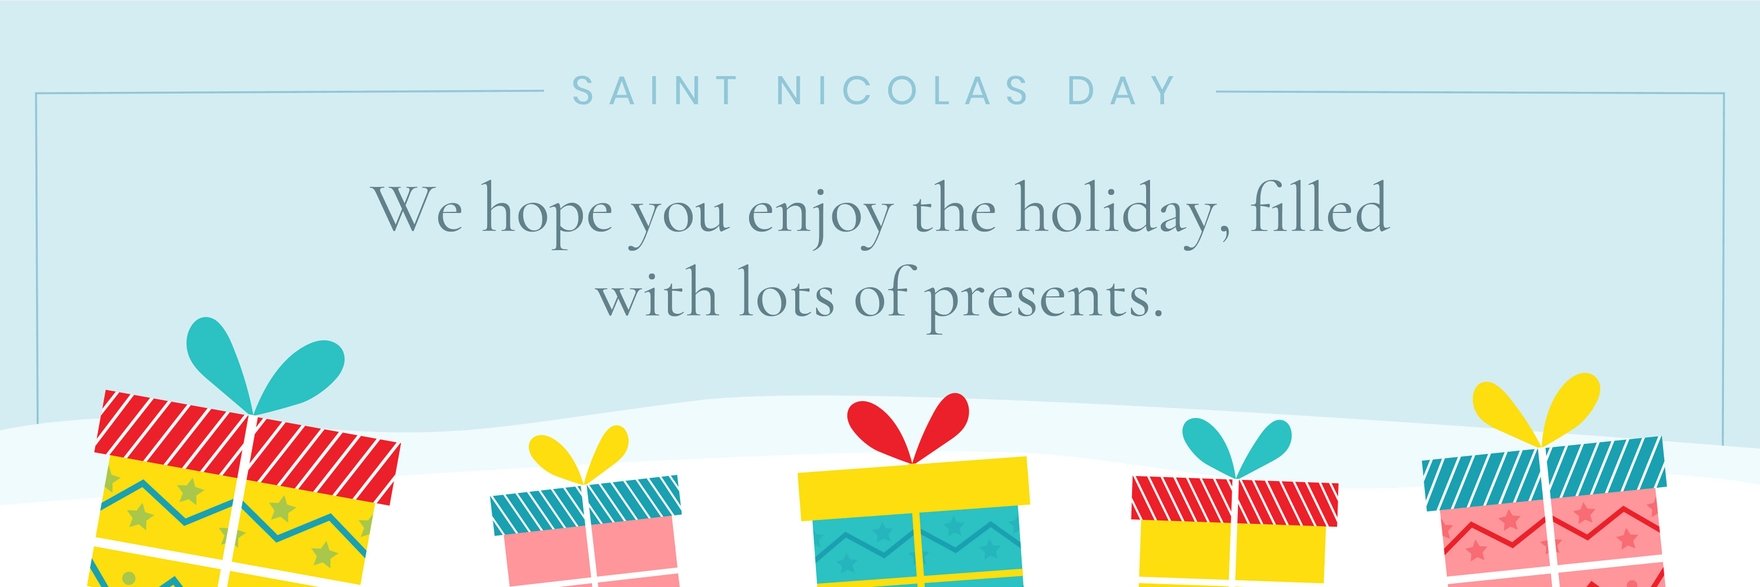 Saint Nicholas Day Twitter Banner